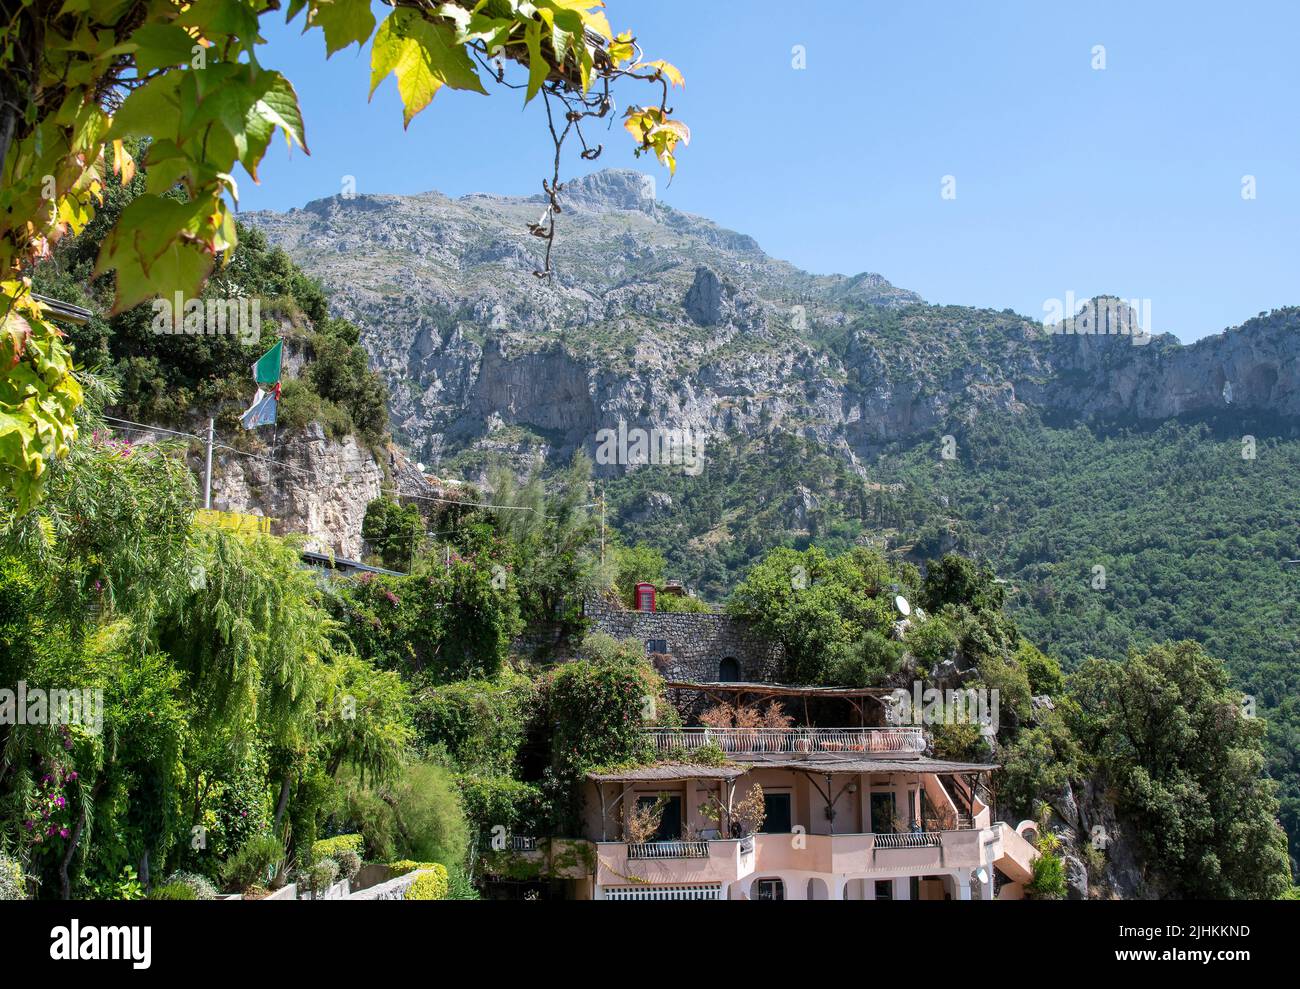 Positano es un pueblo junto al acantilado en la costa de Amalfi, en el sur de Italia. Red British Telephone box encima de la aldea Foto de stock